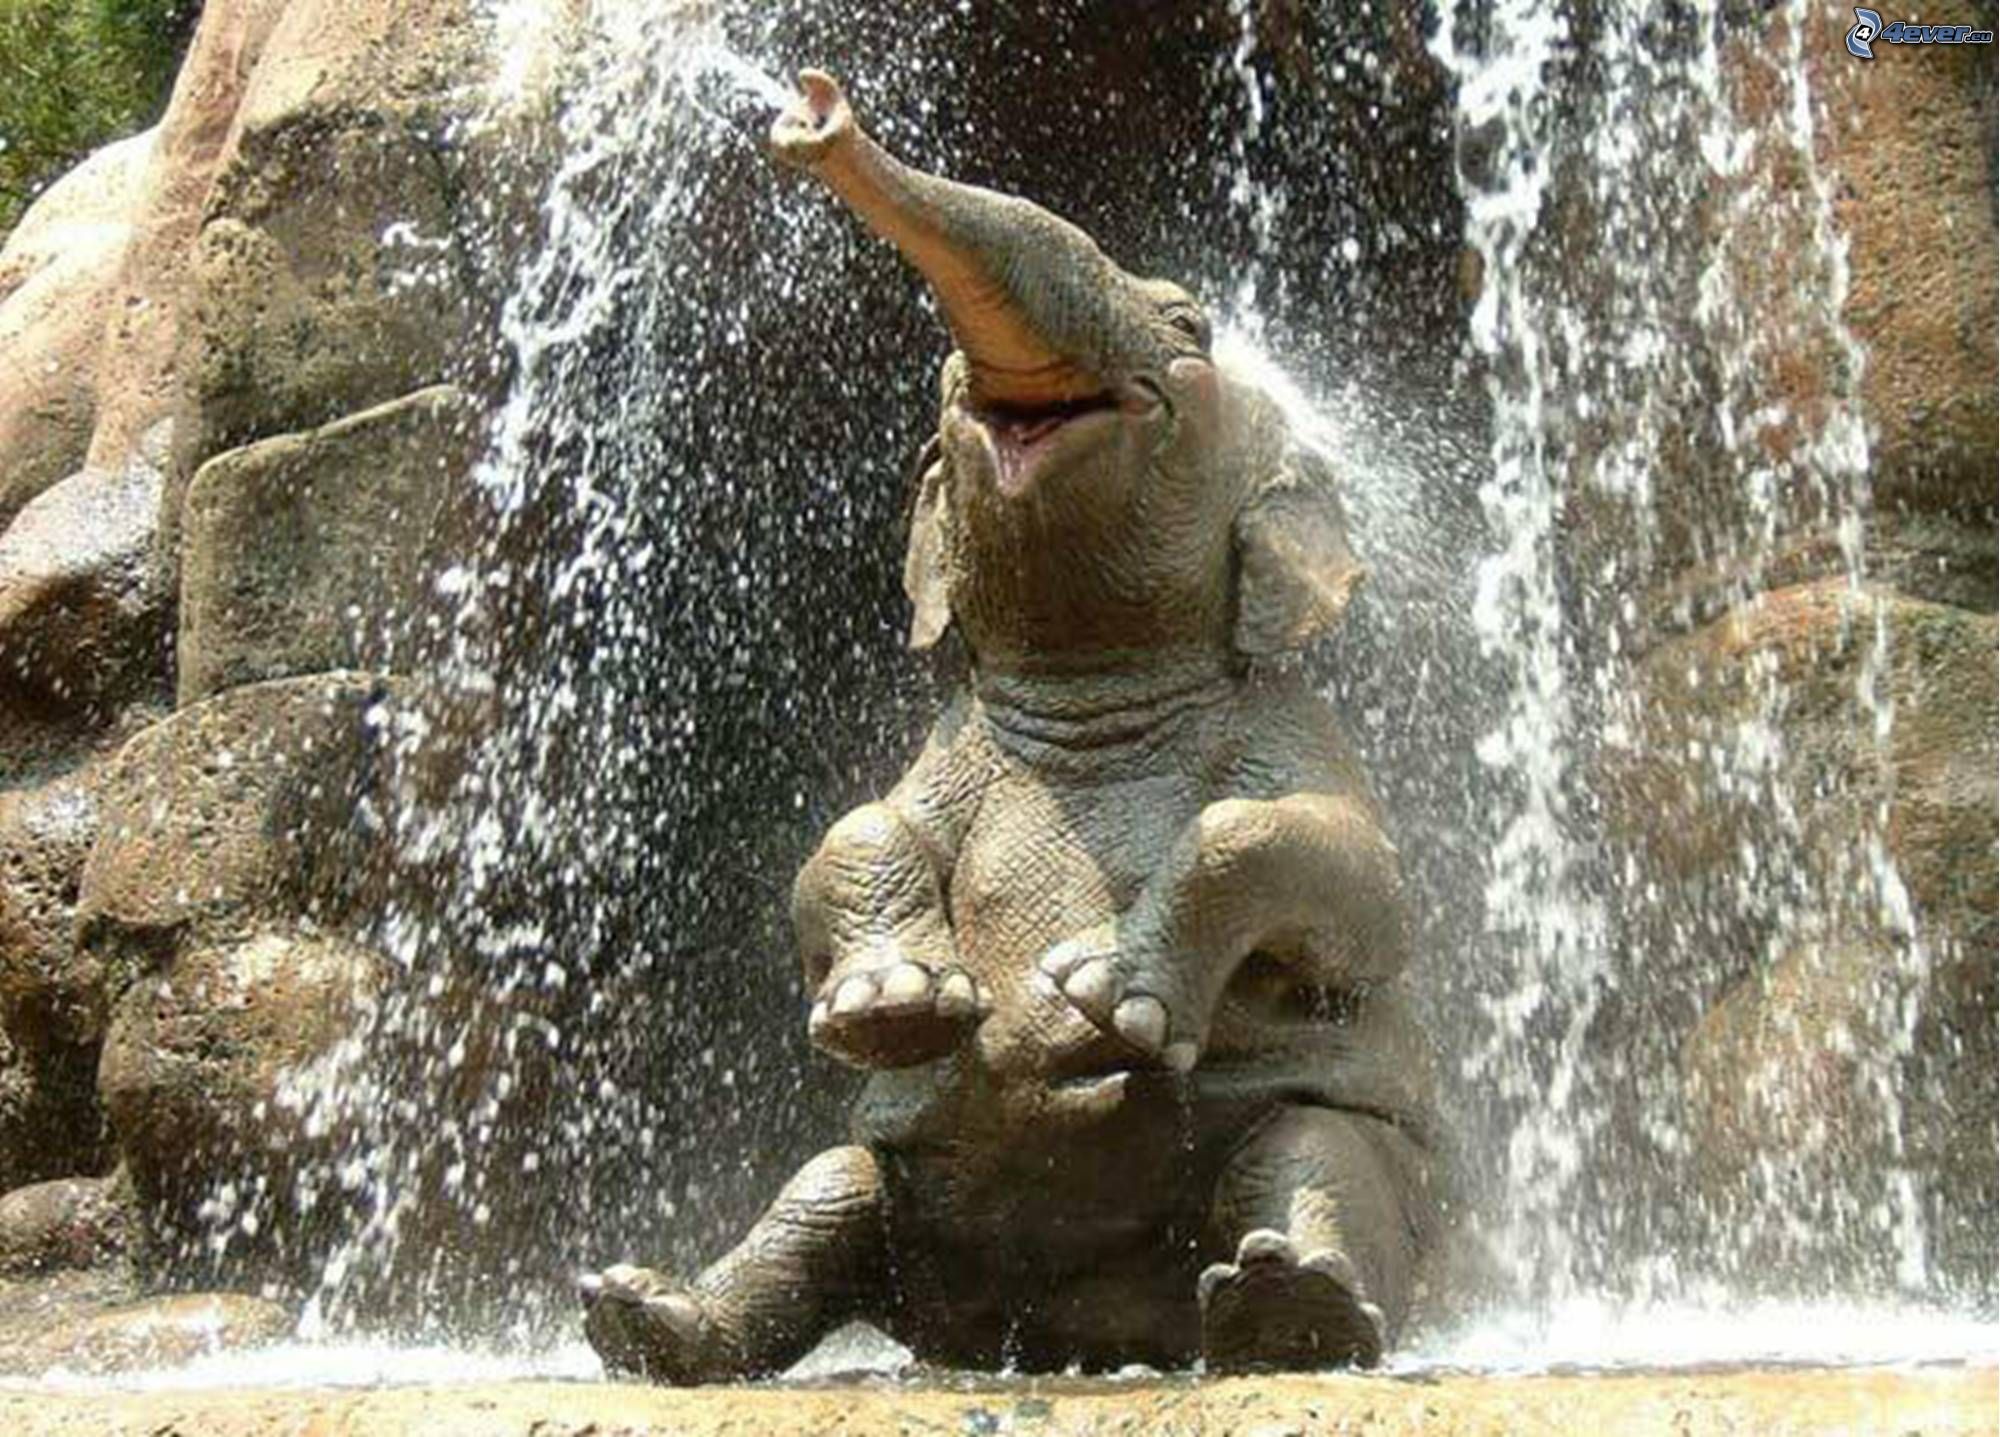 happy-elephant.jpg